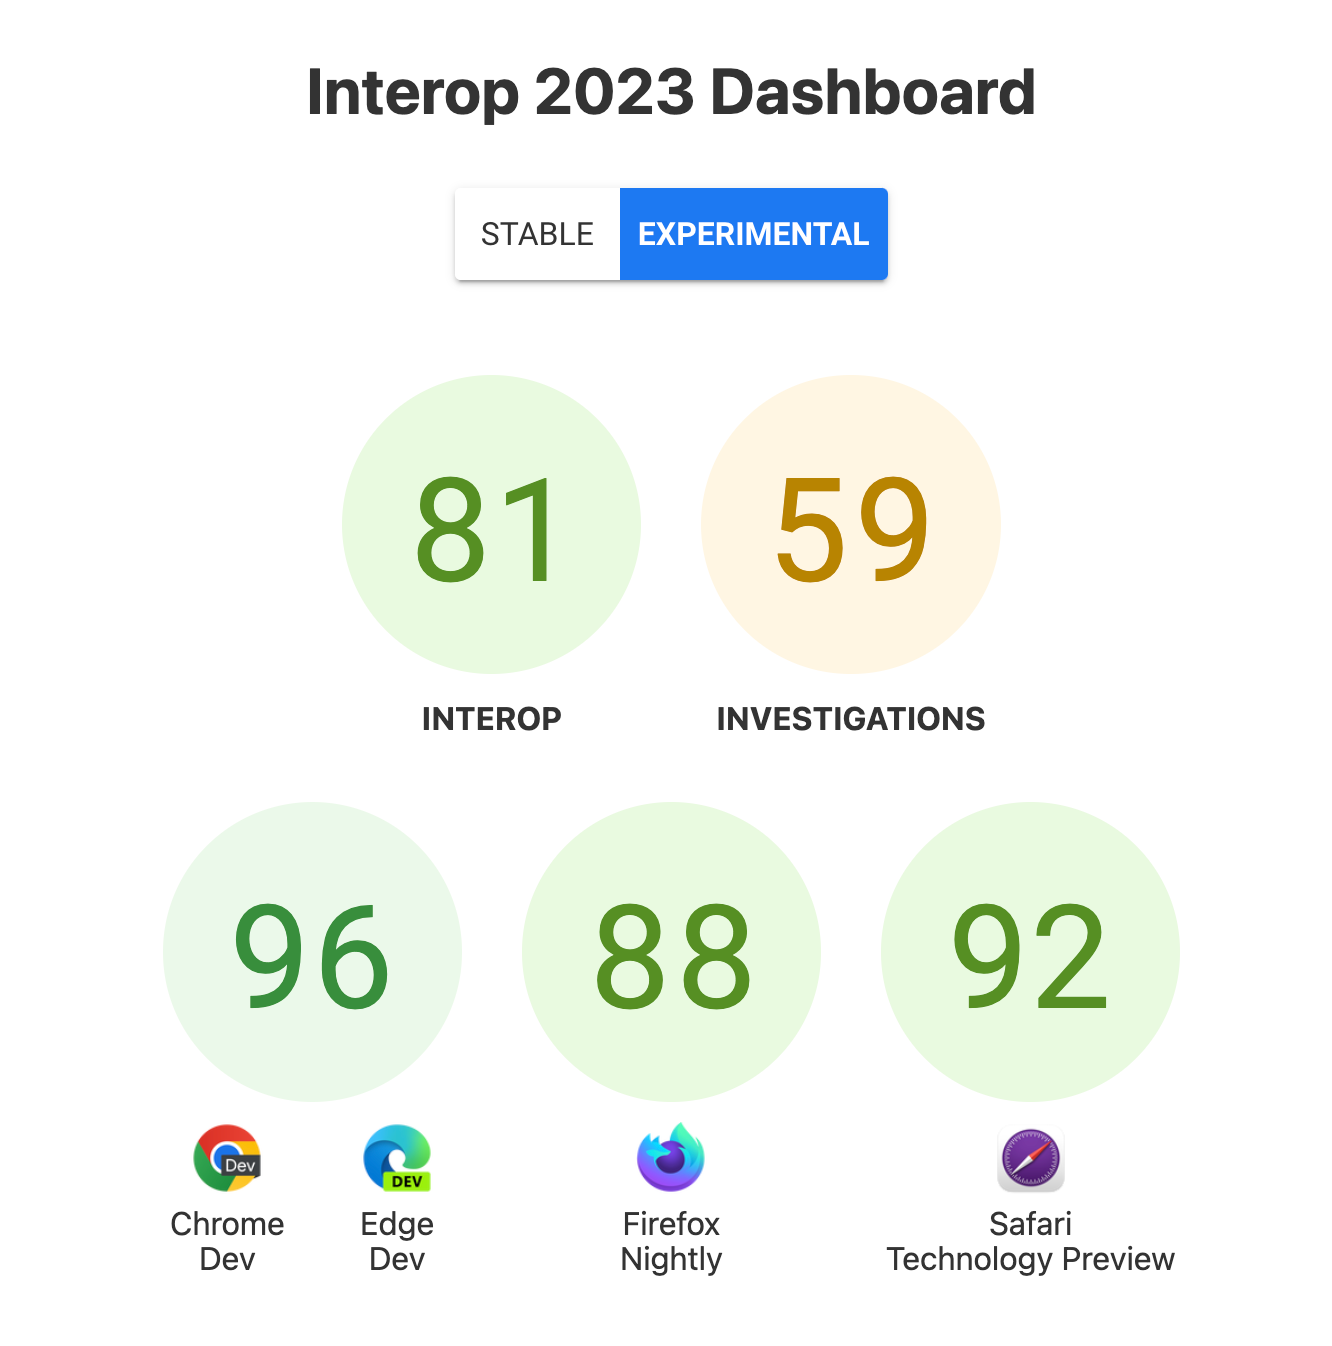 Skor untuk Interop secara keseluruhan: 81, Investigations 59, dan per browser, 96 untuk Chrome Dev dan Edge Dev, 88 untuk Firefox Nightly, dan 92 untuk Safari Technology Preview.